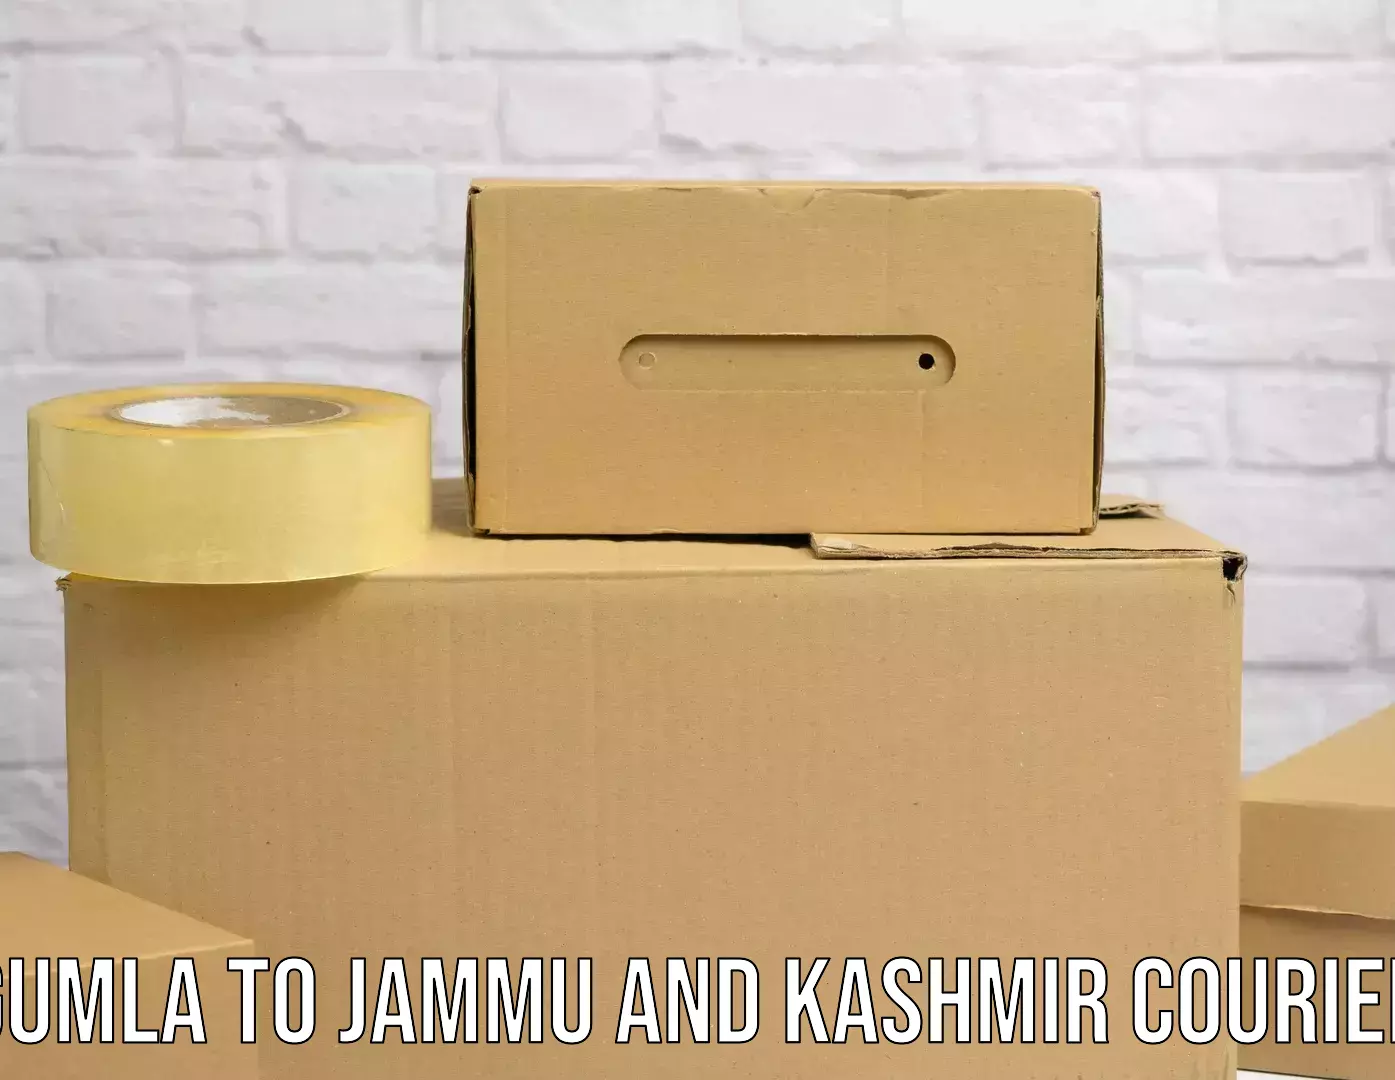 Digital shipping tools Gumla to IIT Jammu